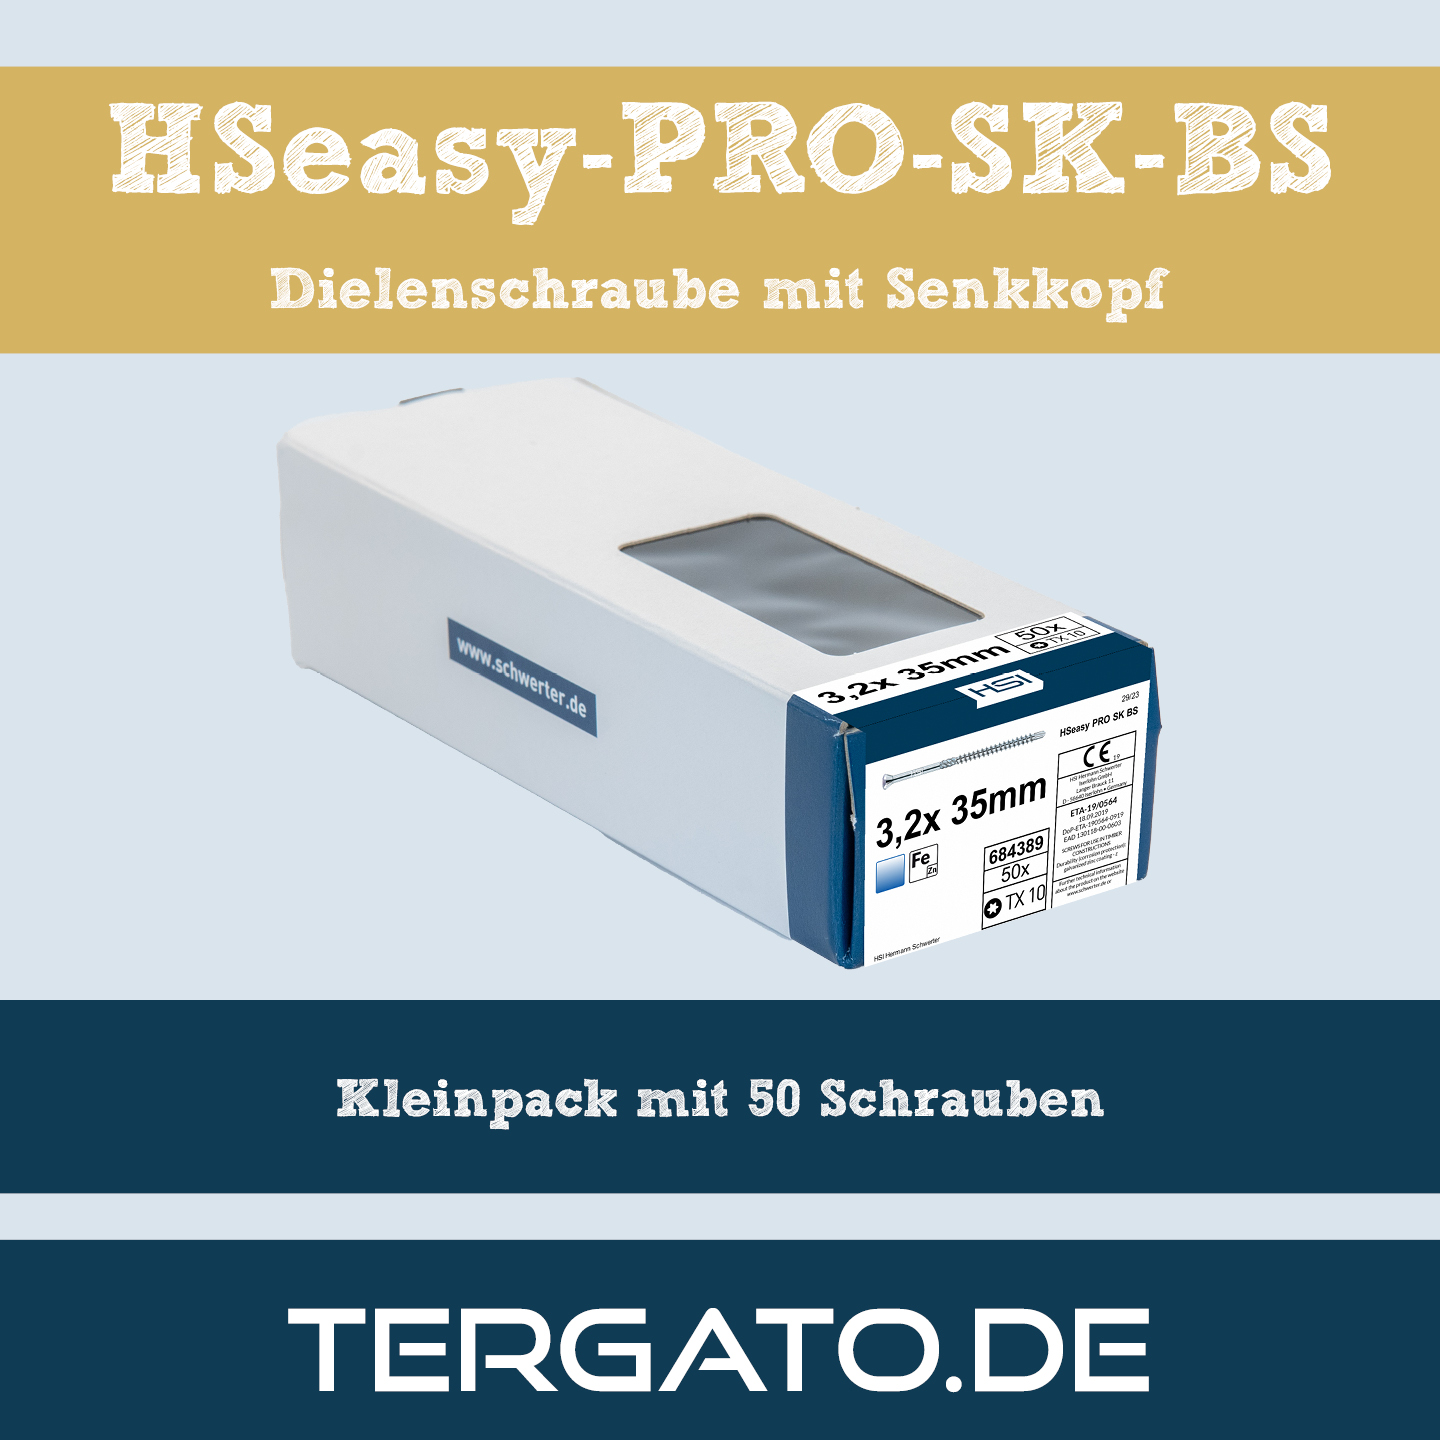 HSeasy PRO SK BS Dielenschraube - im Kleinpack